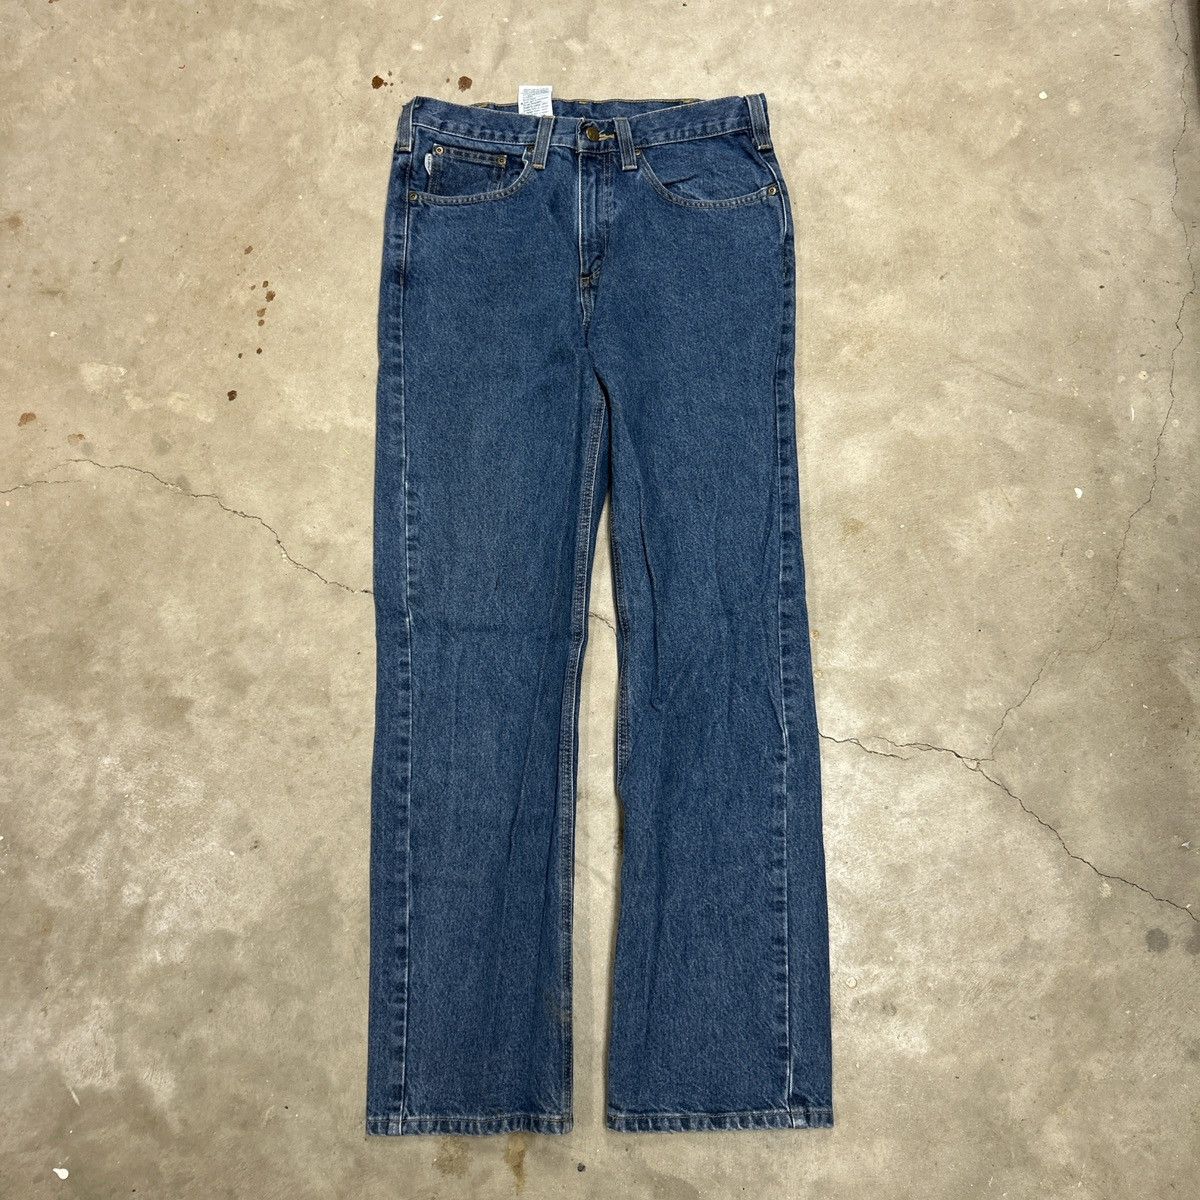 Vintage Carhartt Jeans Size US 32 / EU 48 - 2 Preview